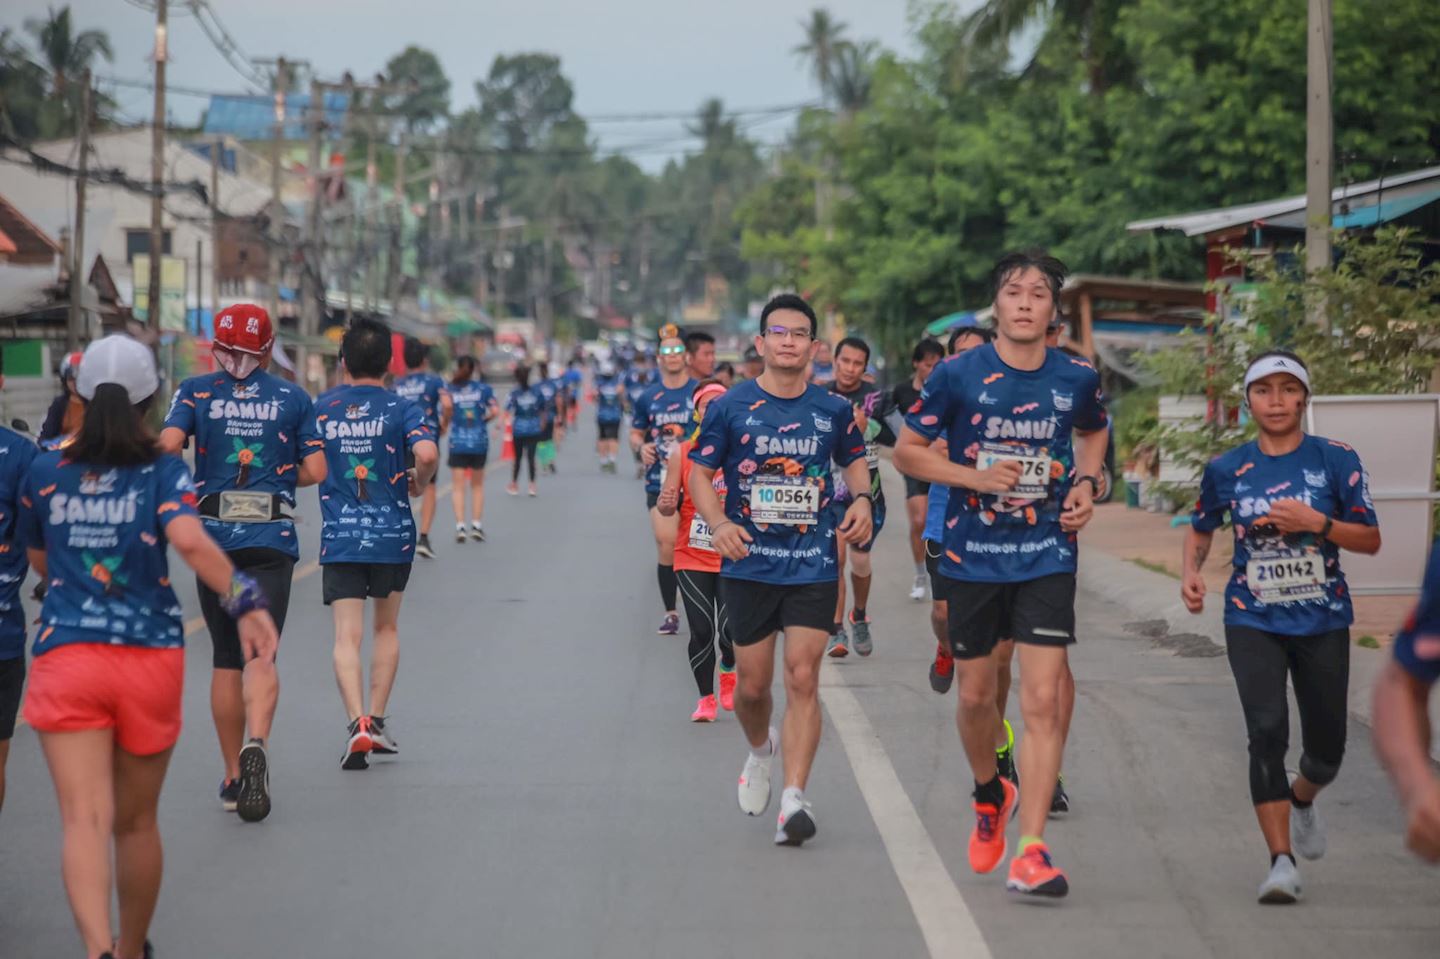 bangkok airways samui half marathon